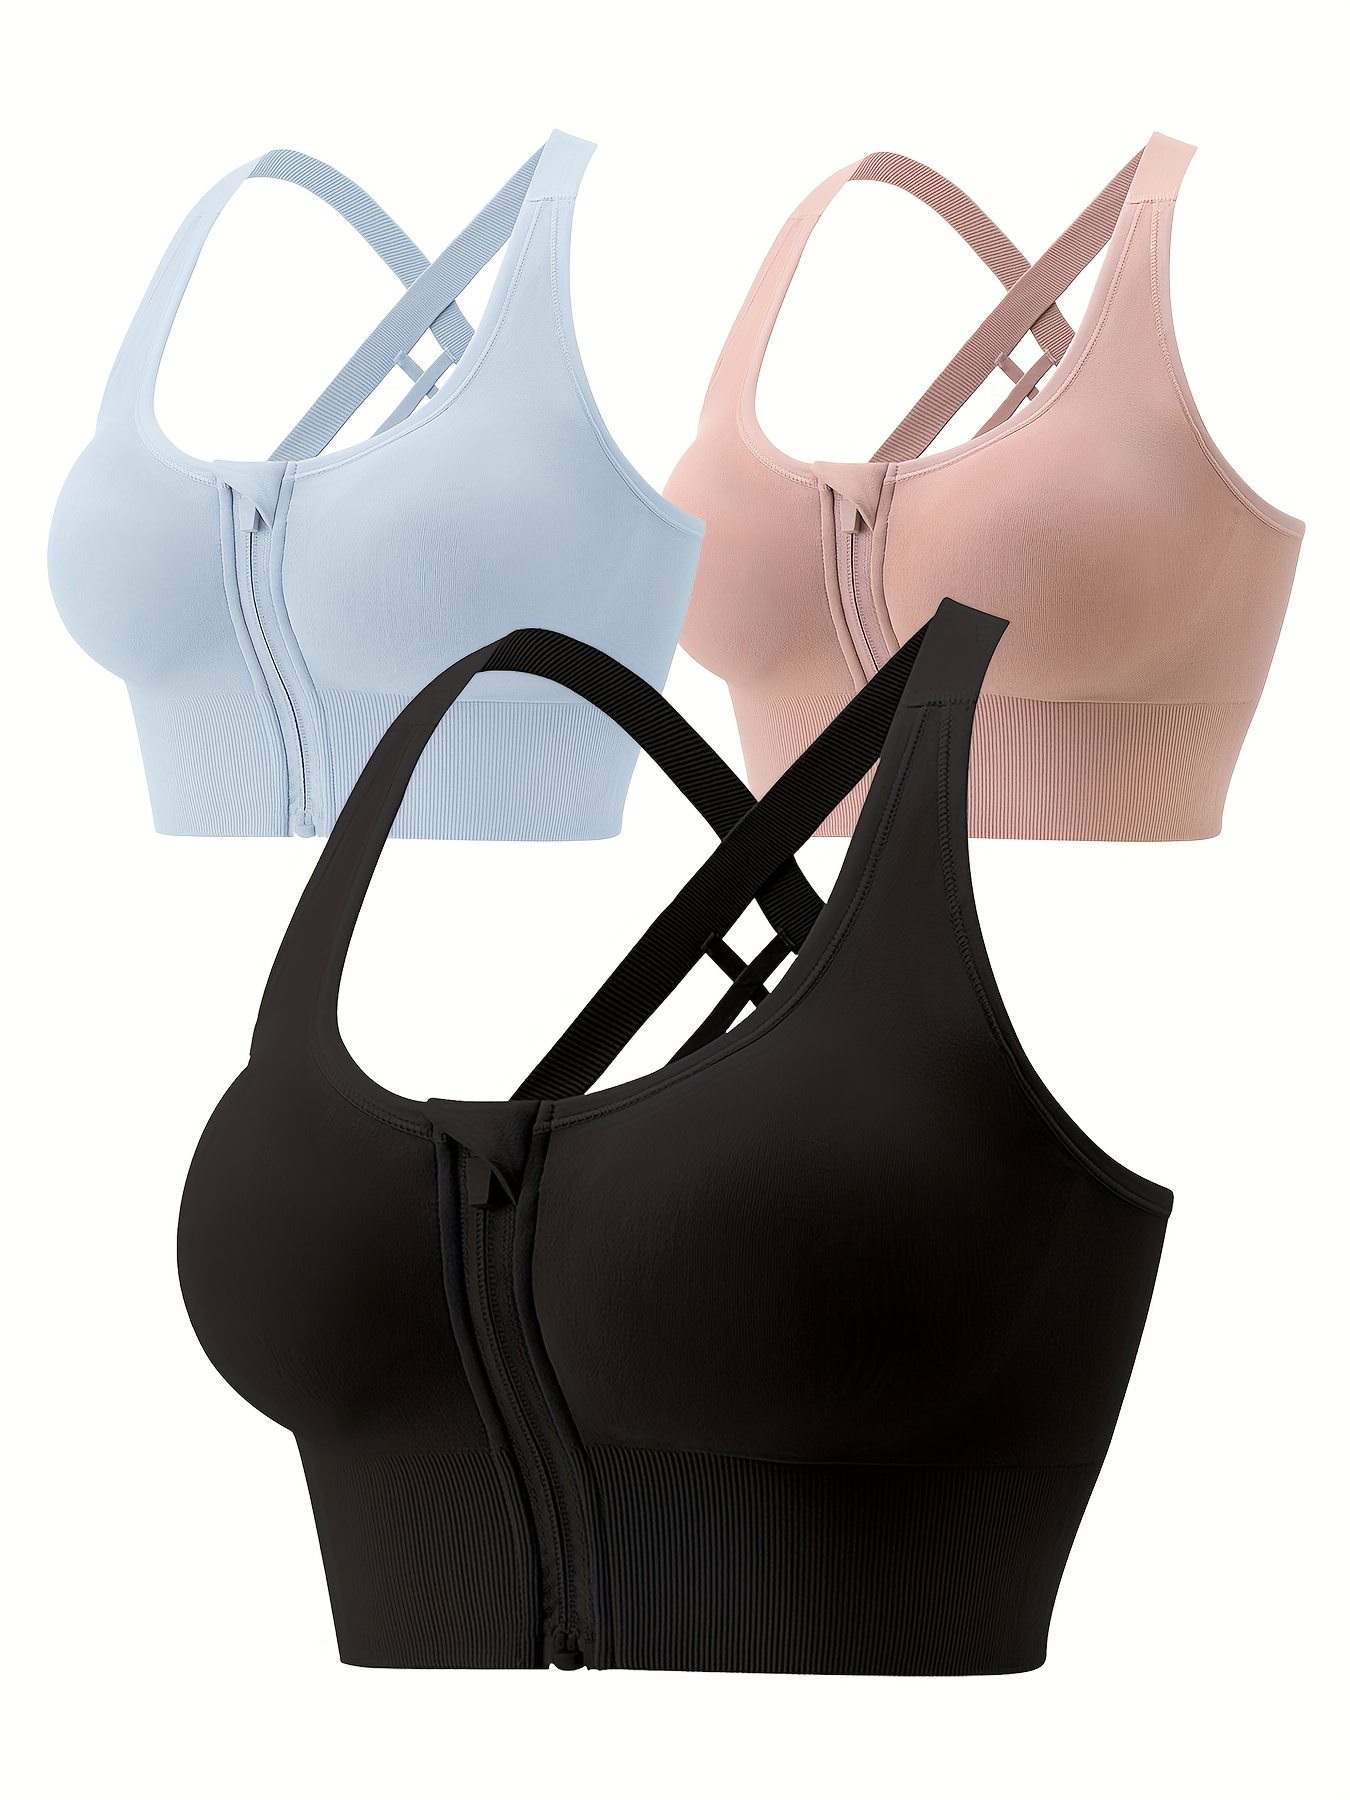 Bras for Women Front Criss Cross Bras Side Buckle Lace Sports Bras Wireless  Push Up Seamless Bra